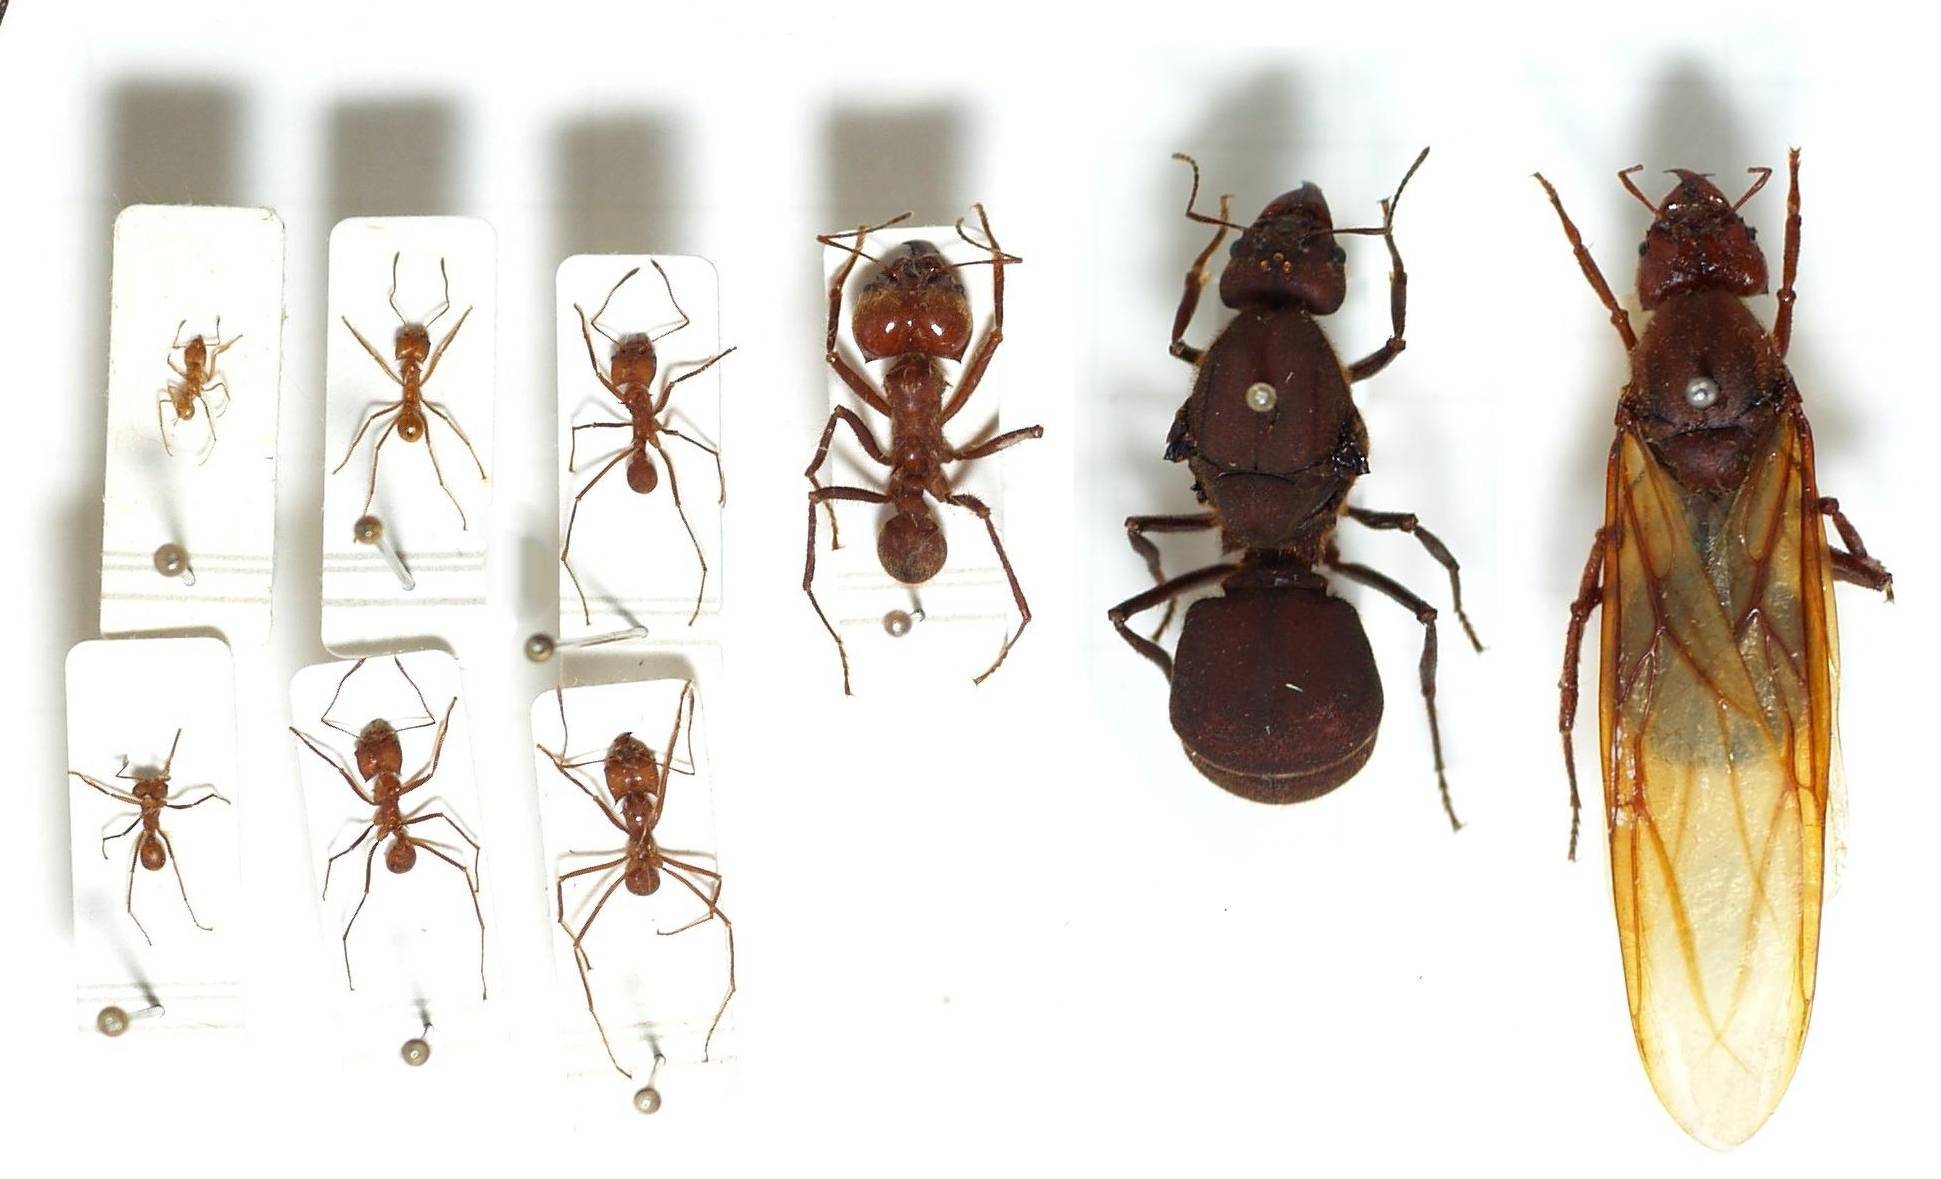 Матка у домашних муравьев как выглядит и как избавиться от нее